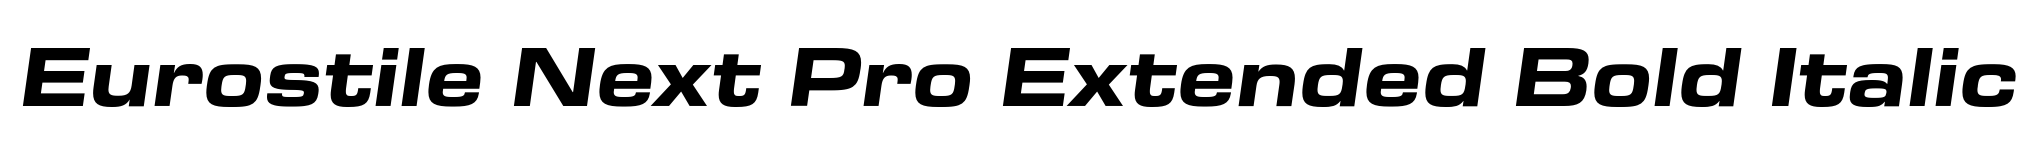 Eurostile Next Pro Extended Bold Italic image